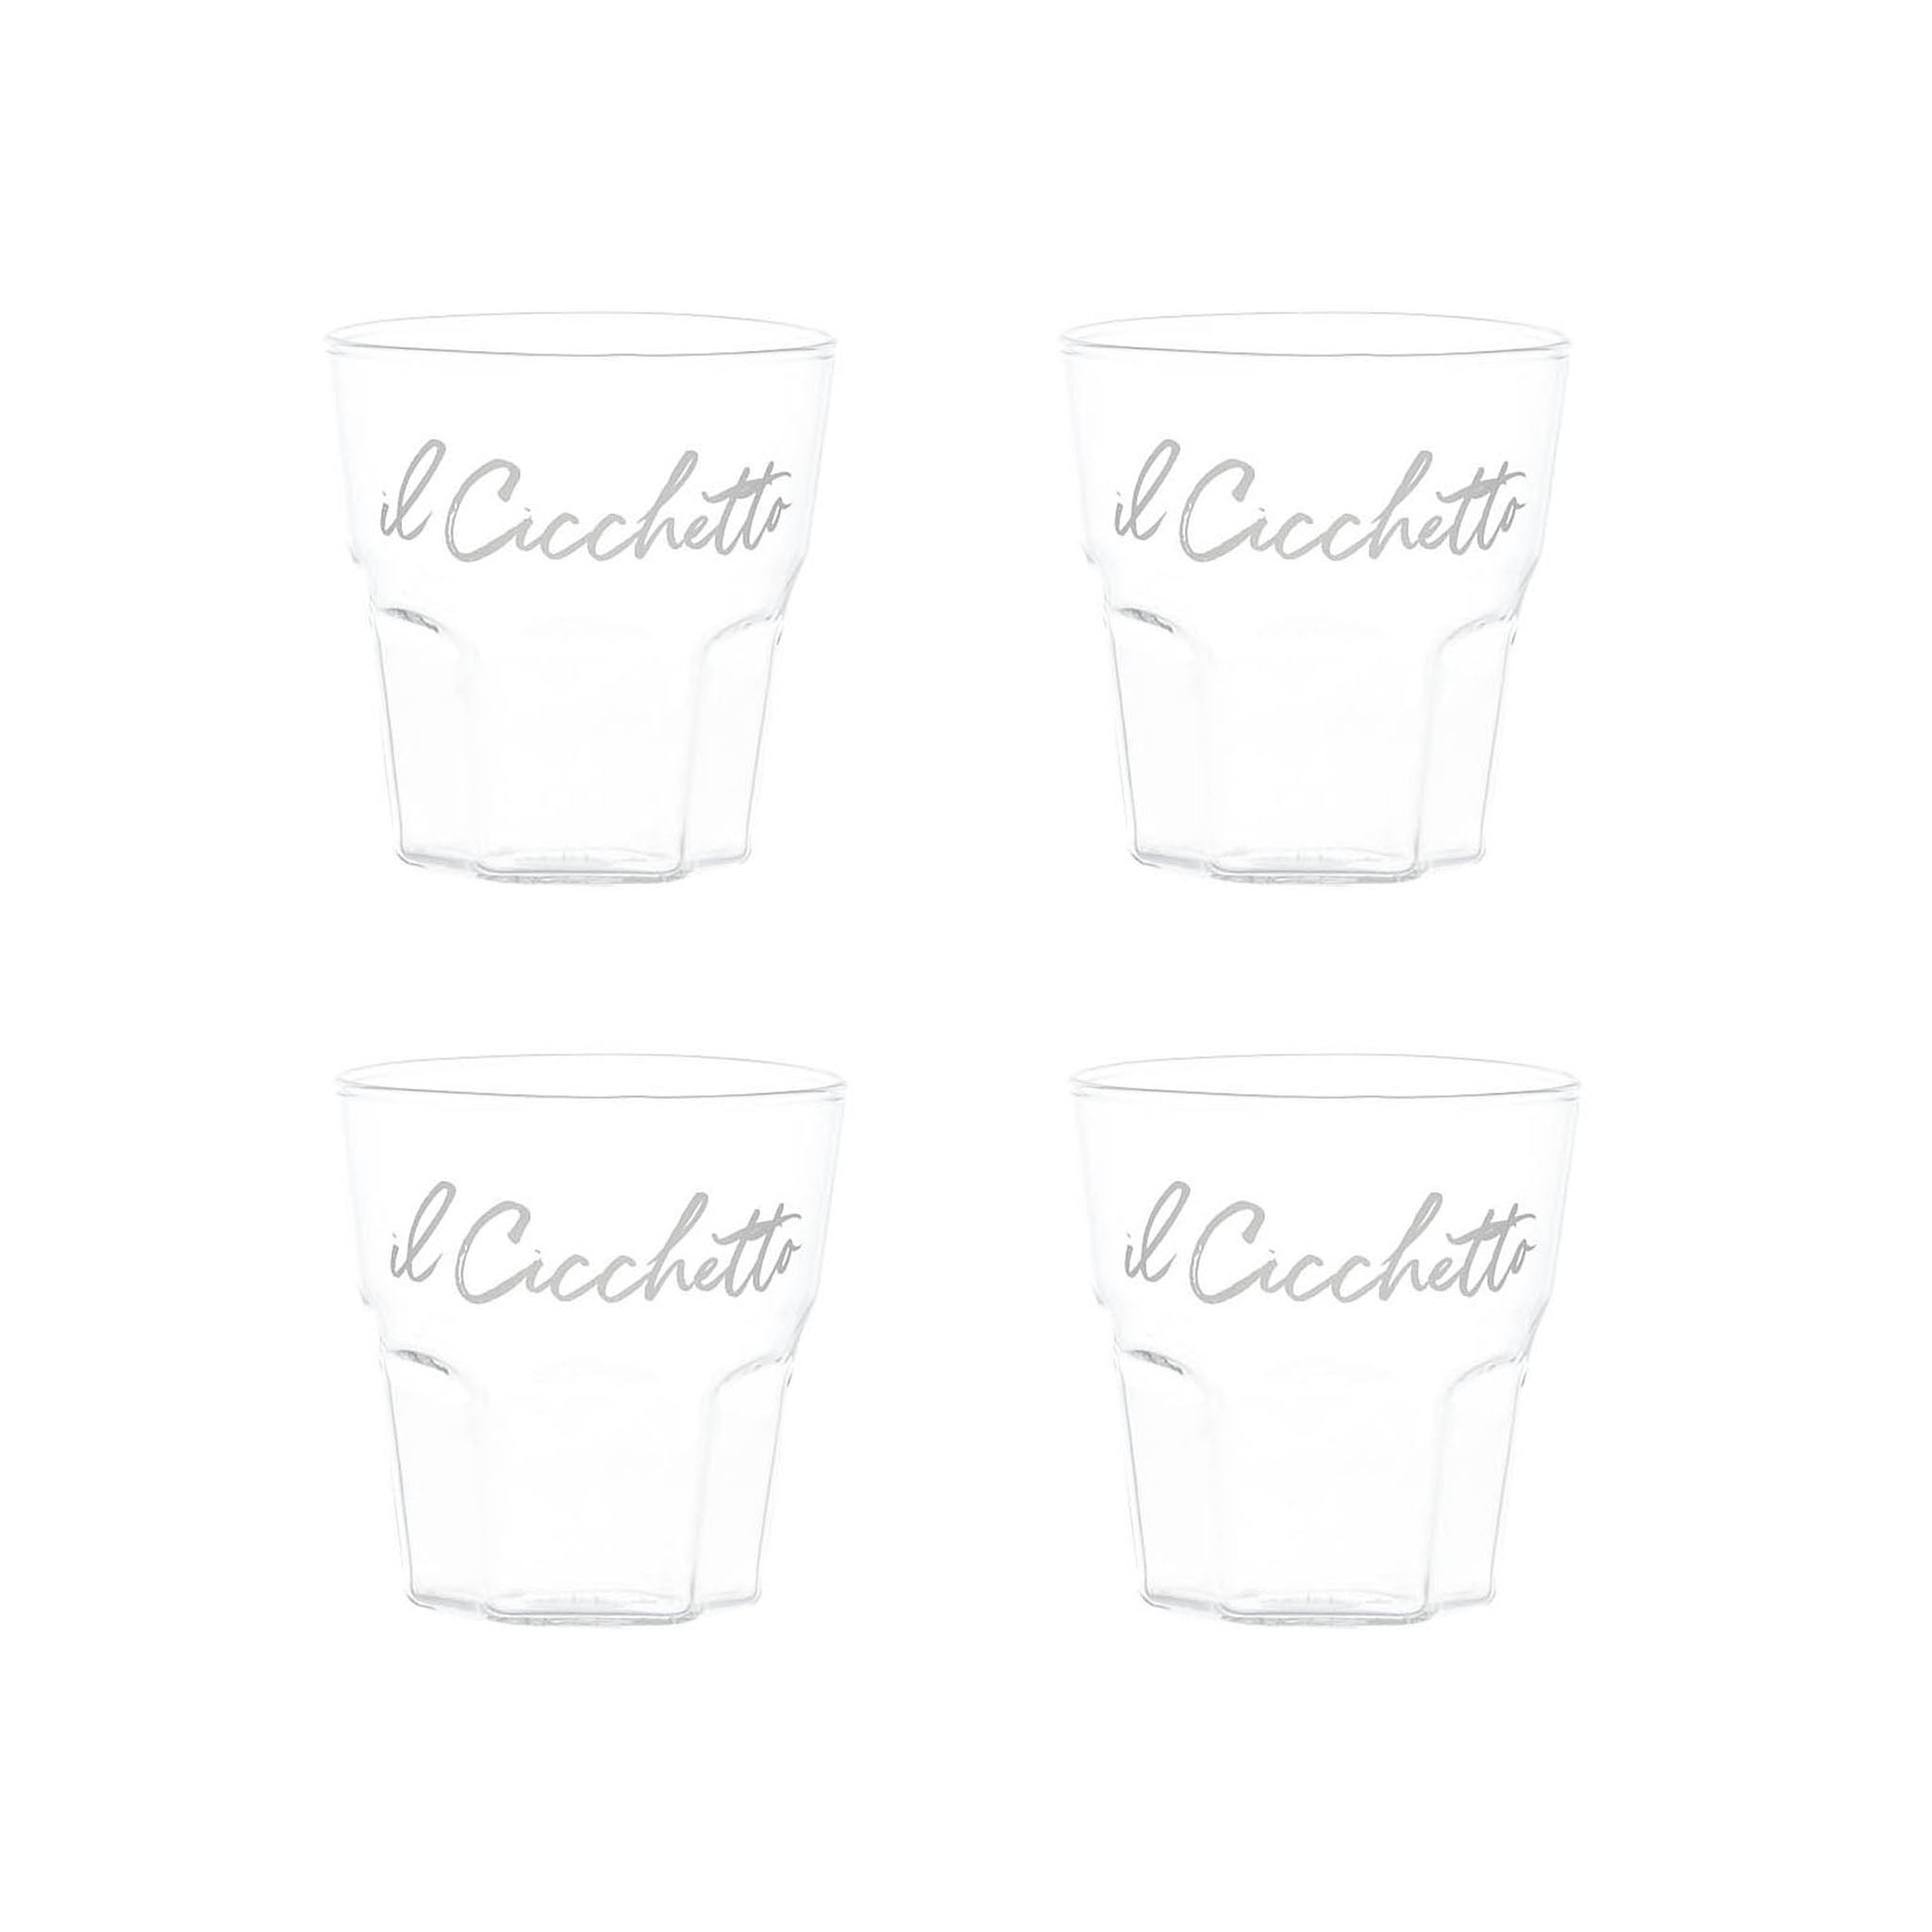 Liquor Glass "Il Cicchetto" in White - Set of 4